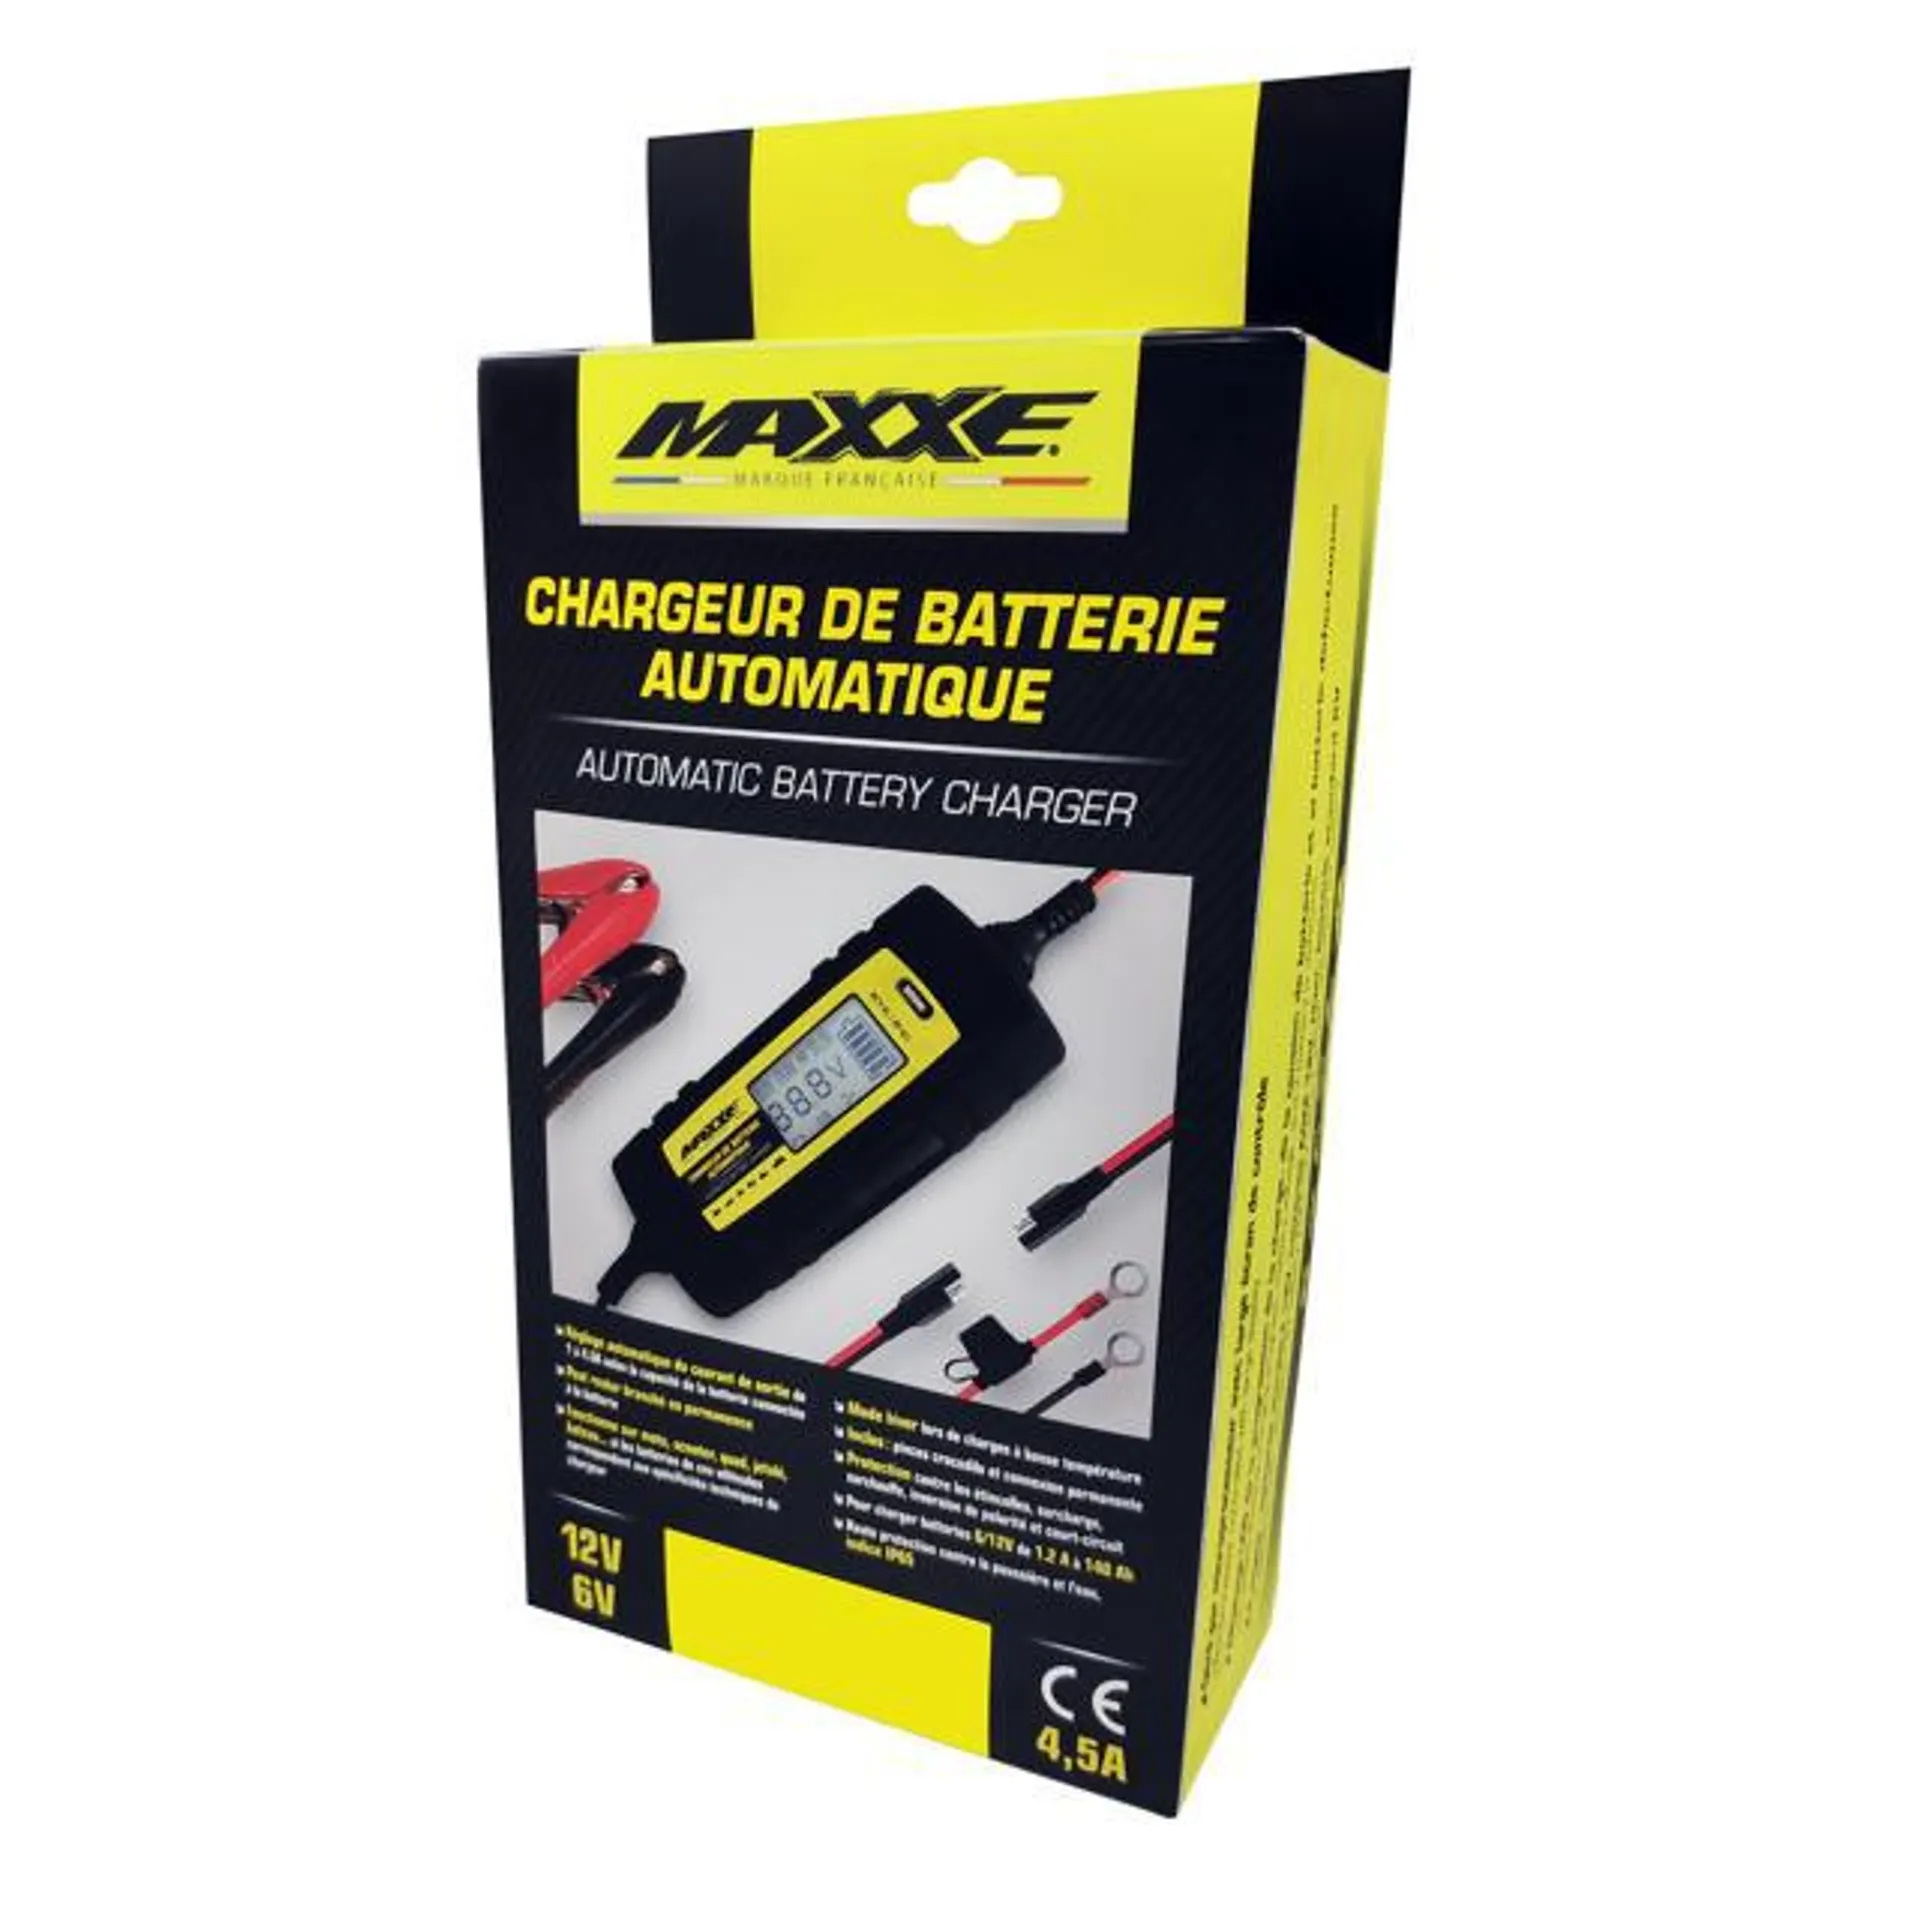 MAXXE Chargeur De Batterie Automatique 6-12V / 1A-4,5A Chargeur de batterie